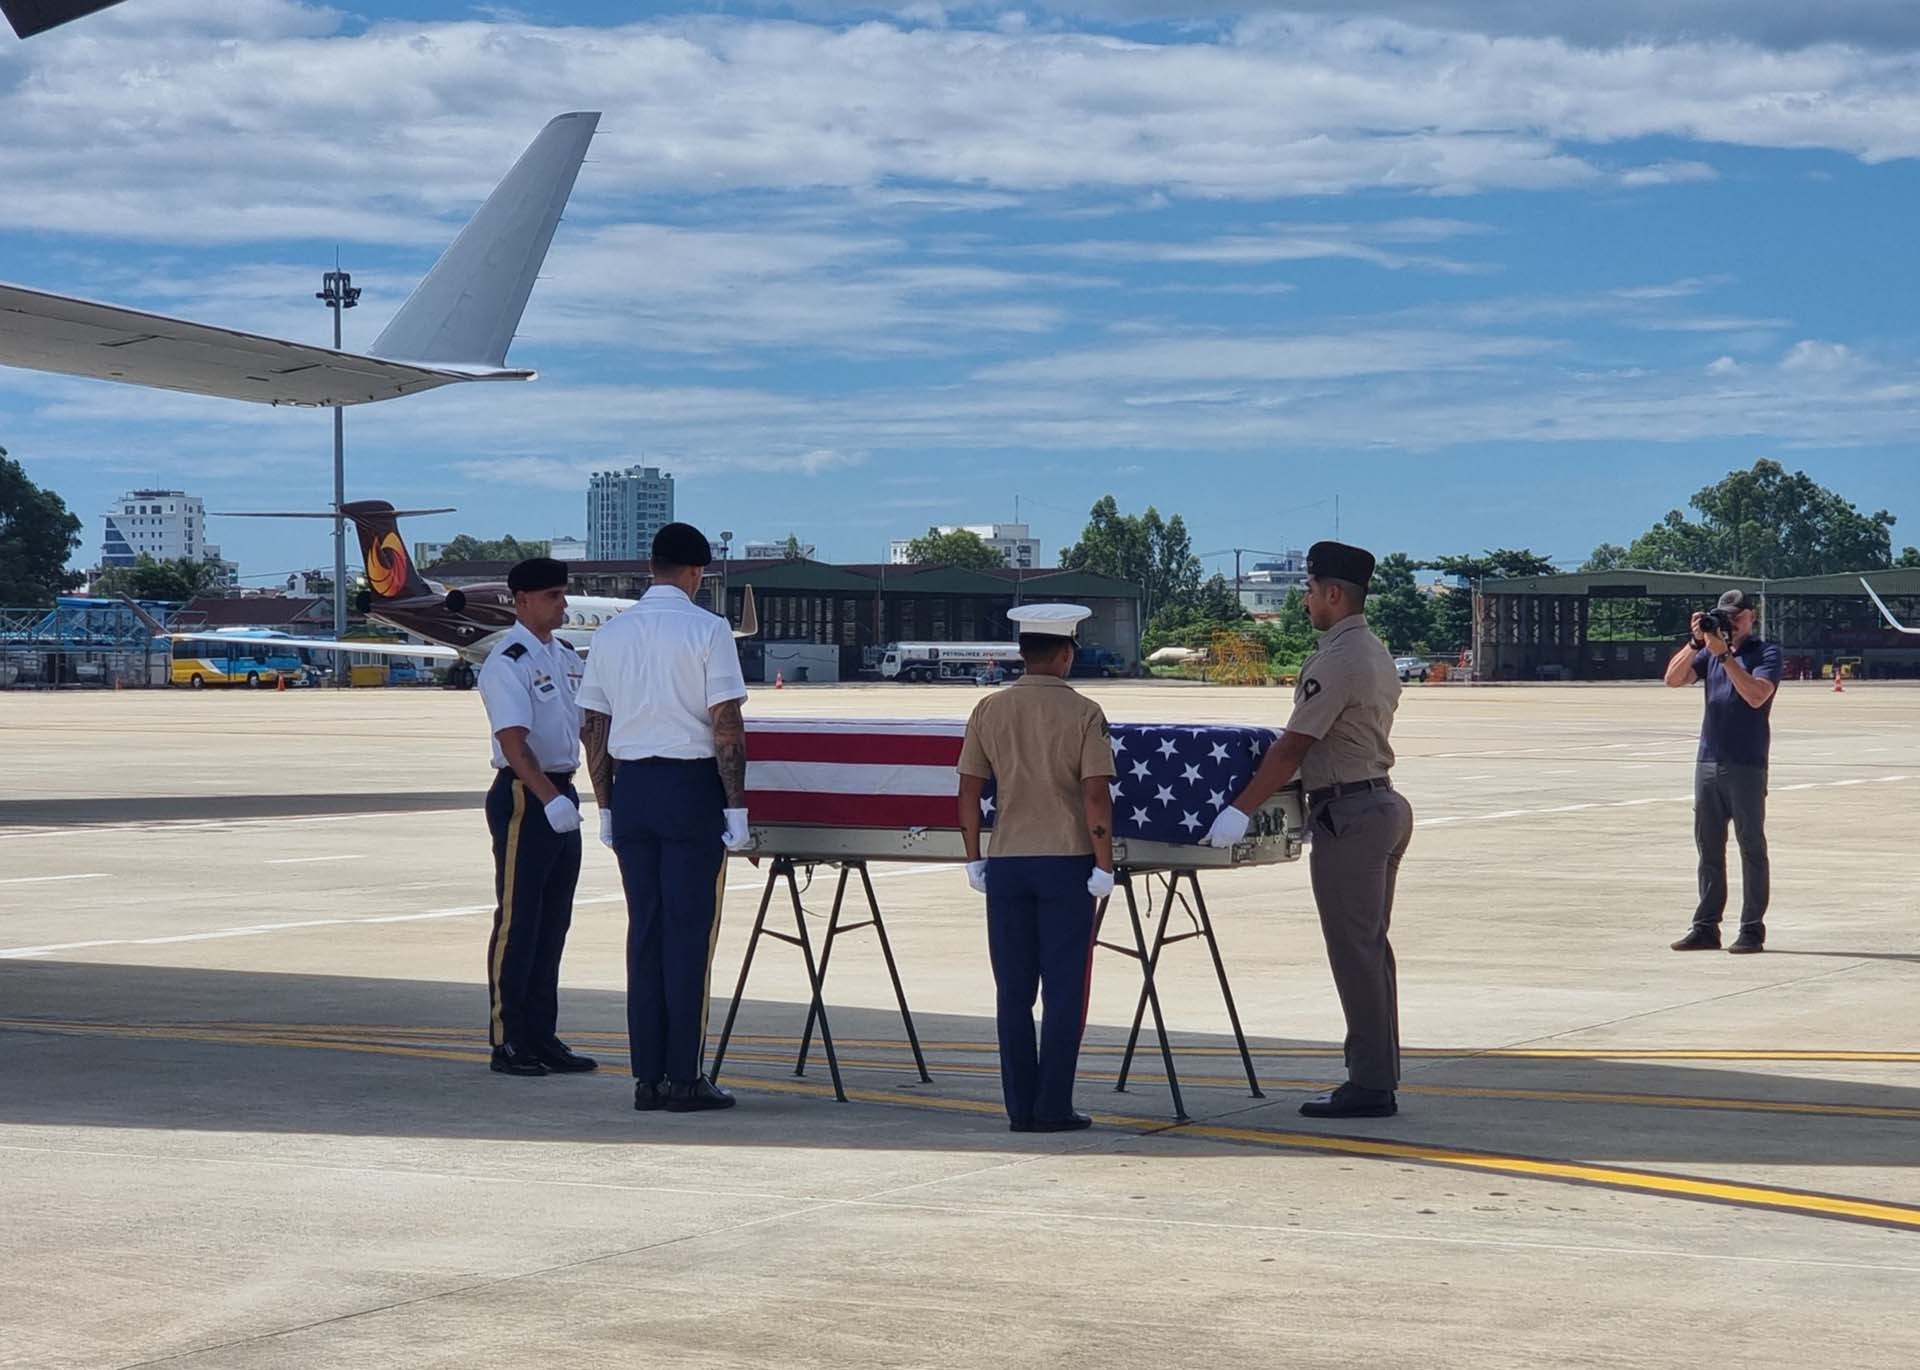 Lễ hồi hương hài cốt quân nhân Hoa Kỳ mất tích trong chiến tranh ở Việt Nam diễn ra tại sân bay Quốc tế Đà Nẵng.